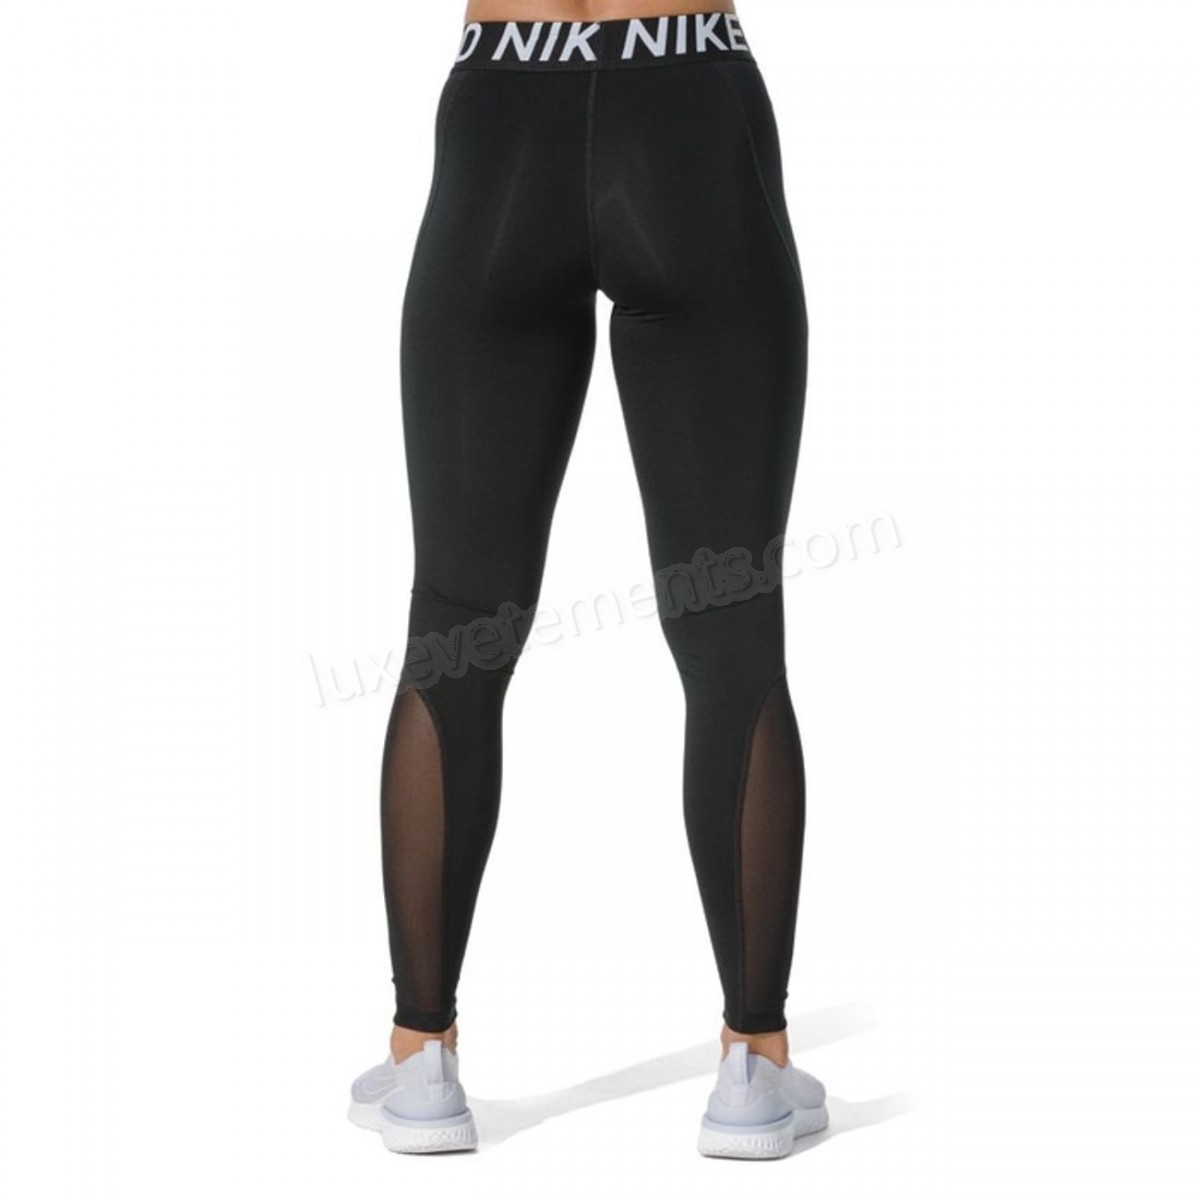 Nike-LEGGING Fitness femme NIKE Nike Pro Vente en ligne - -2